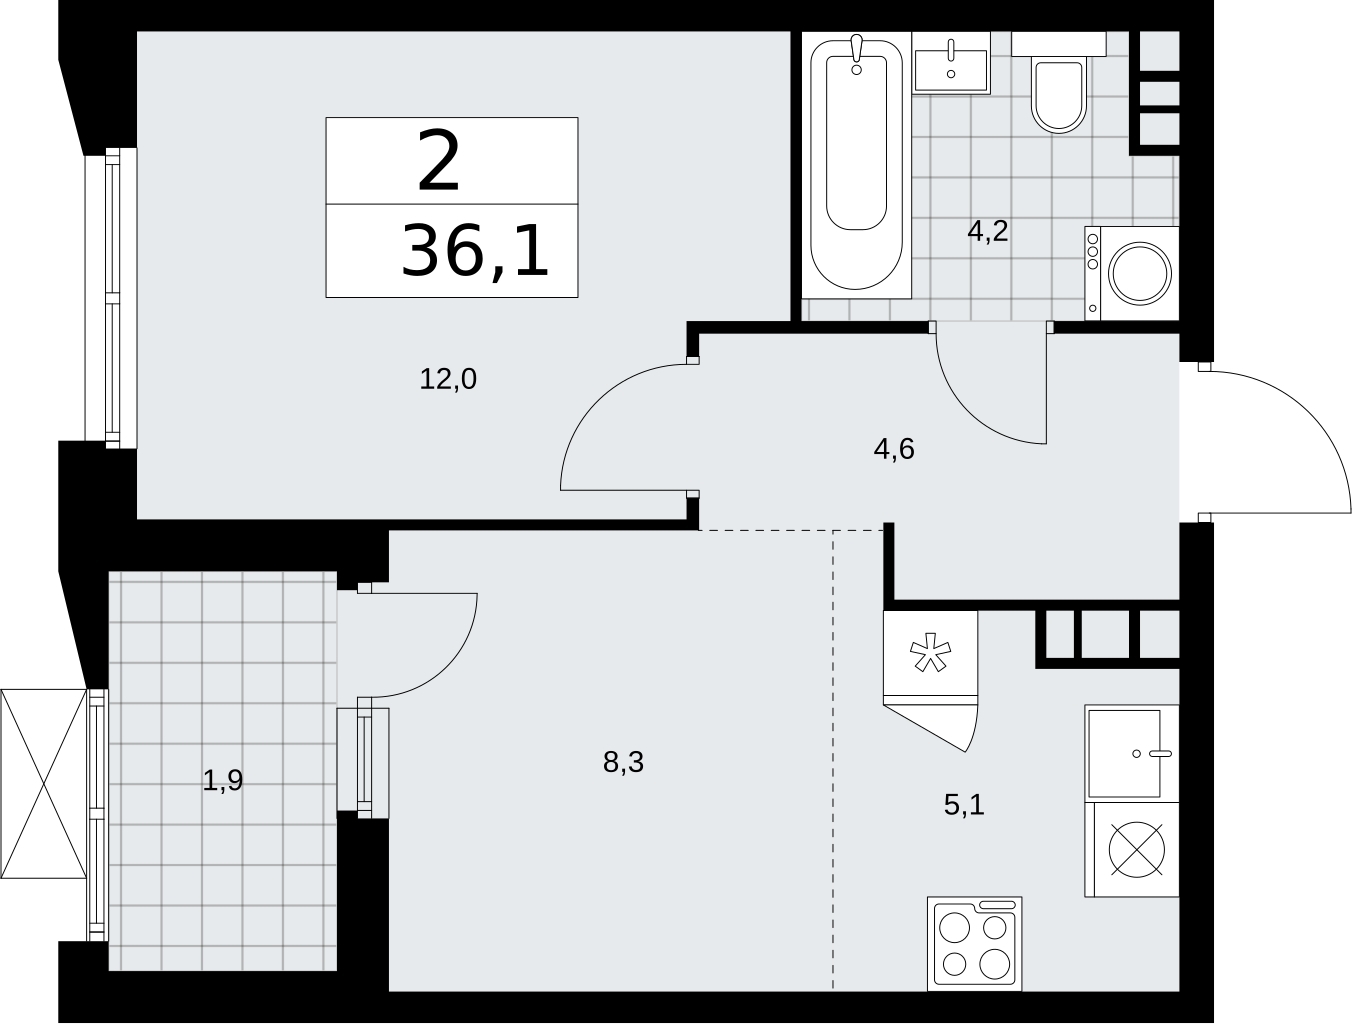 Продается просторная двухкомнатная квартира в новом жилом комплексе, метро рядом